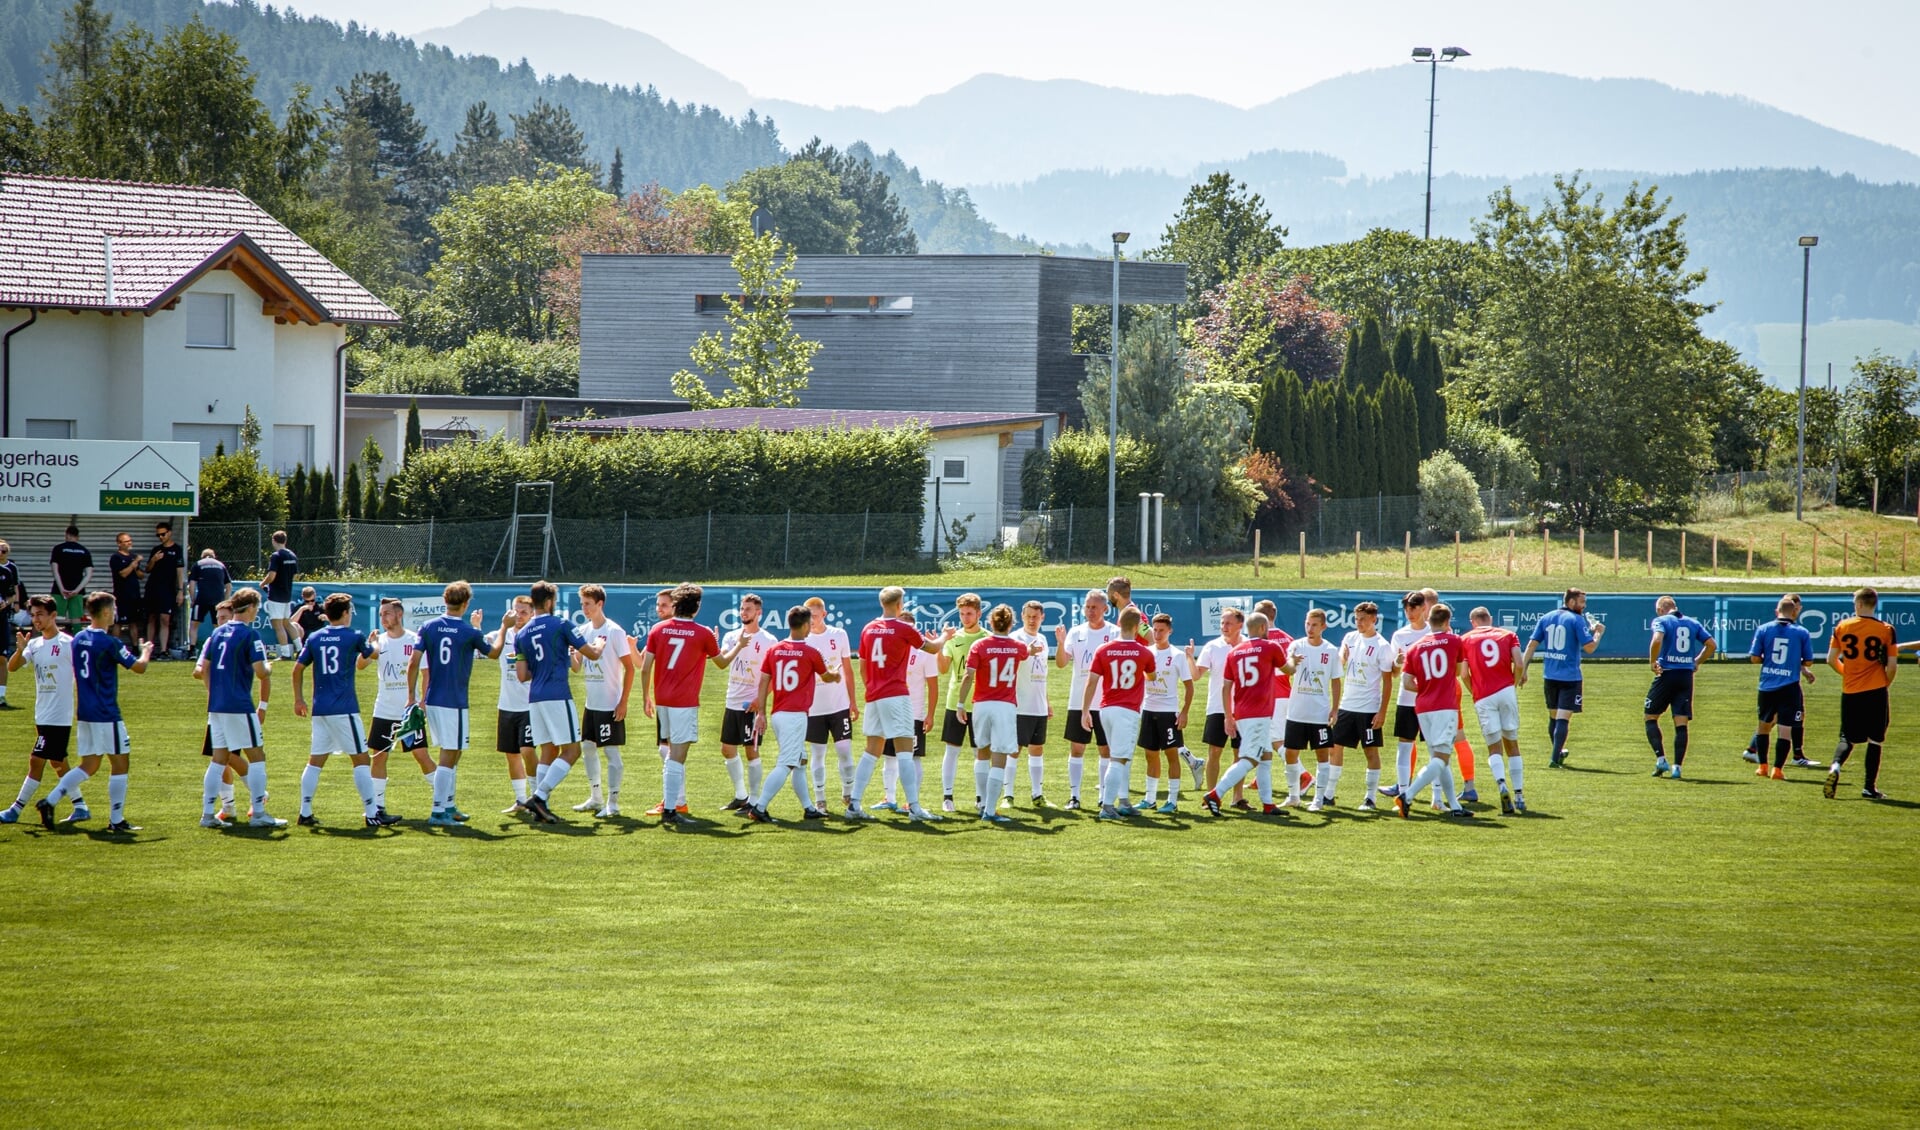 Det Sydslesvigske Fodboldlandshold (i rødt) mødte fantastiske omgivelser til Europeada i Kärnten. Om to år kan stævnet måske spilles i grænselandet.